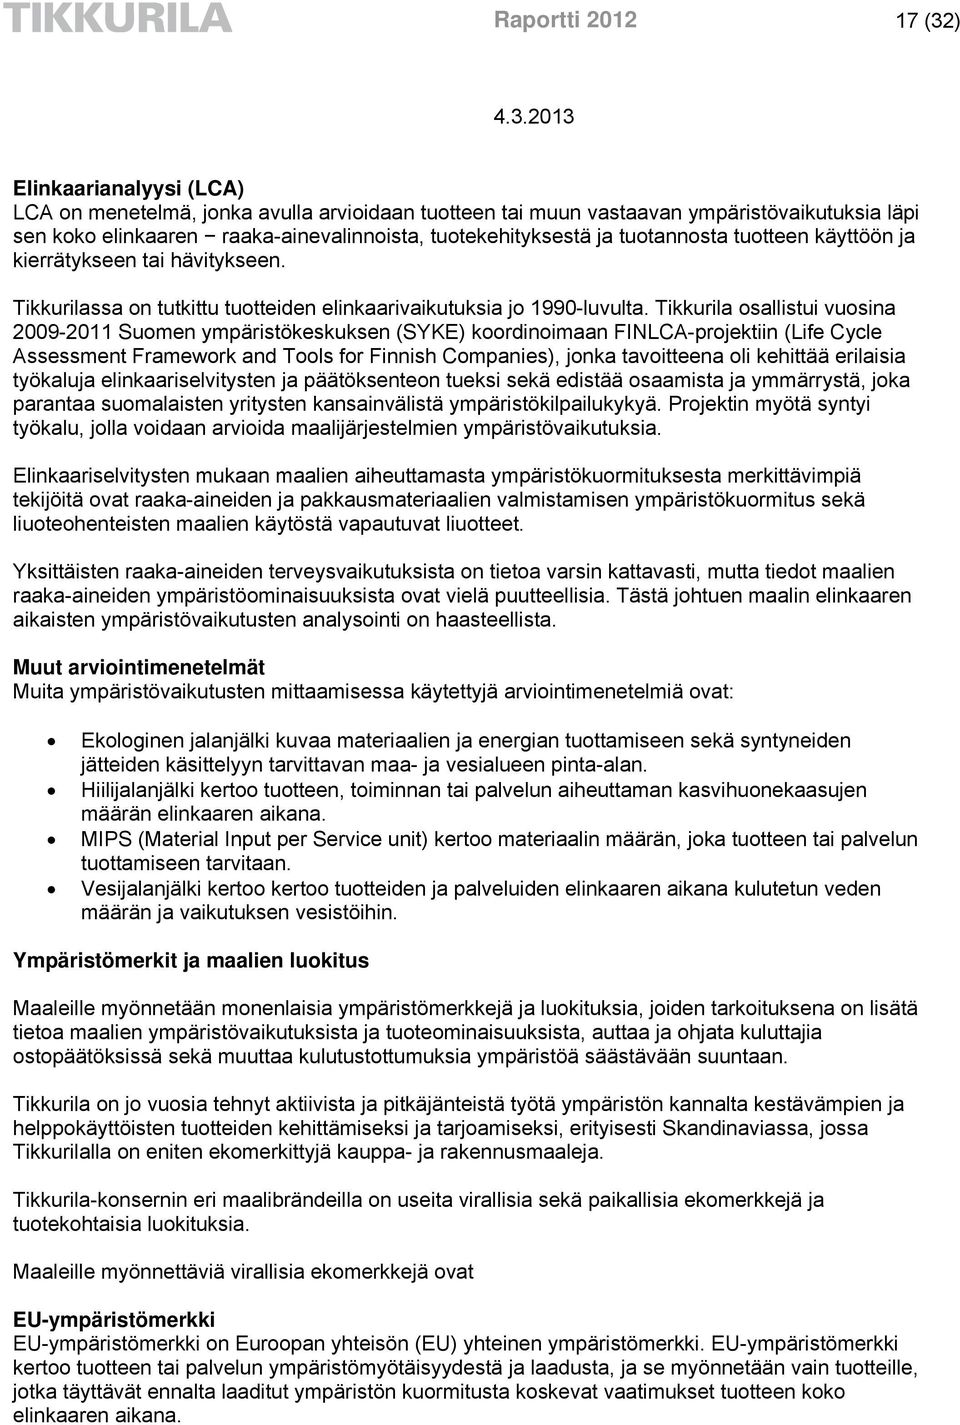 Tikkurila osallistui vuosina 2009-2011 Suomen ympäristökeskuksen (SYKE) koordinoimaan FINLCA-projektiin (Life Cycle Assessment Framework and Tools for Finnish Companies), jonka tavoitteena oli